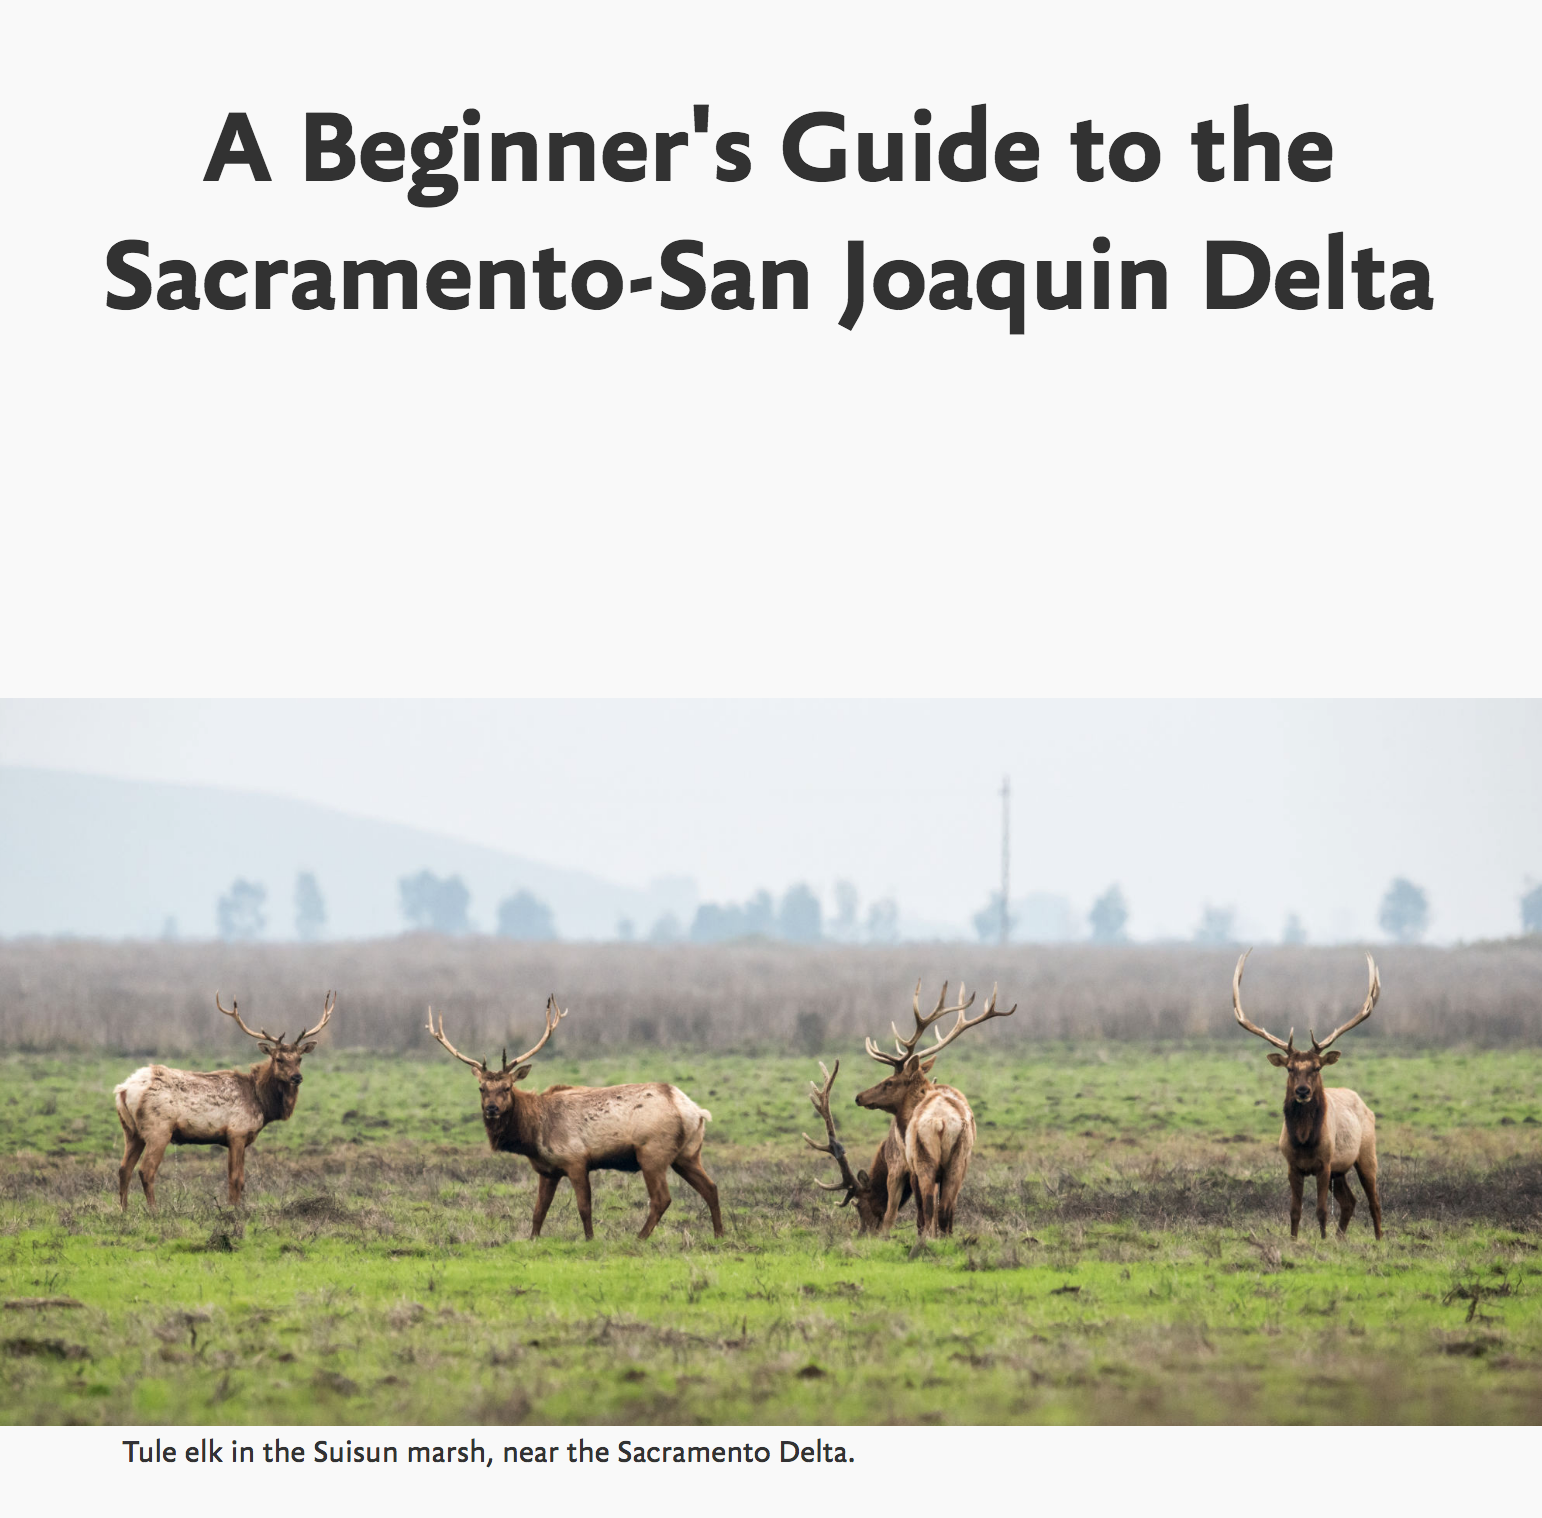 A Beginner's Guide to the Sacramento-San Joaquin Delta